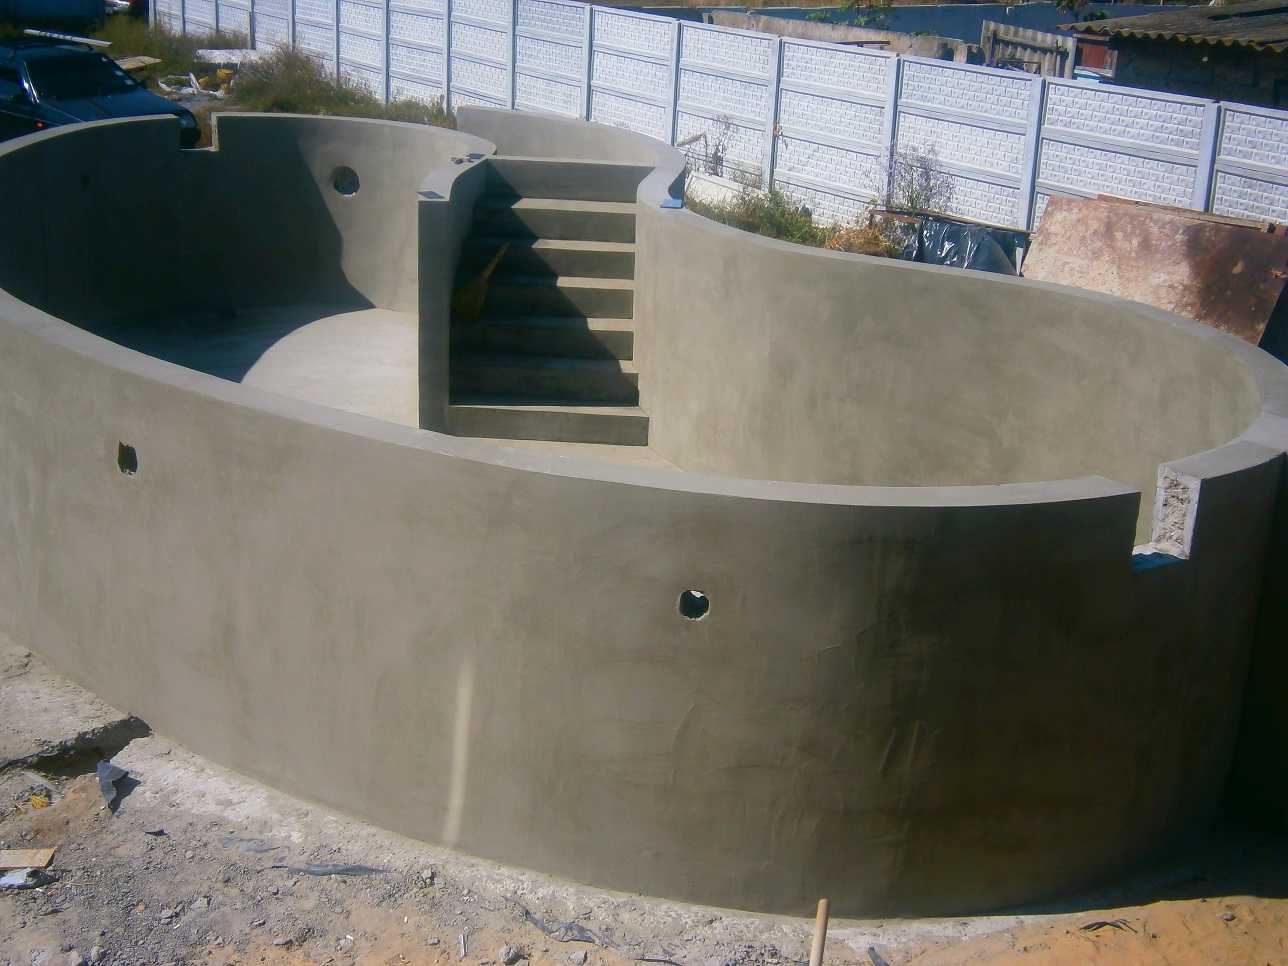 Строительство бассейна из бетона: поэтапная инструкция, видео